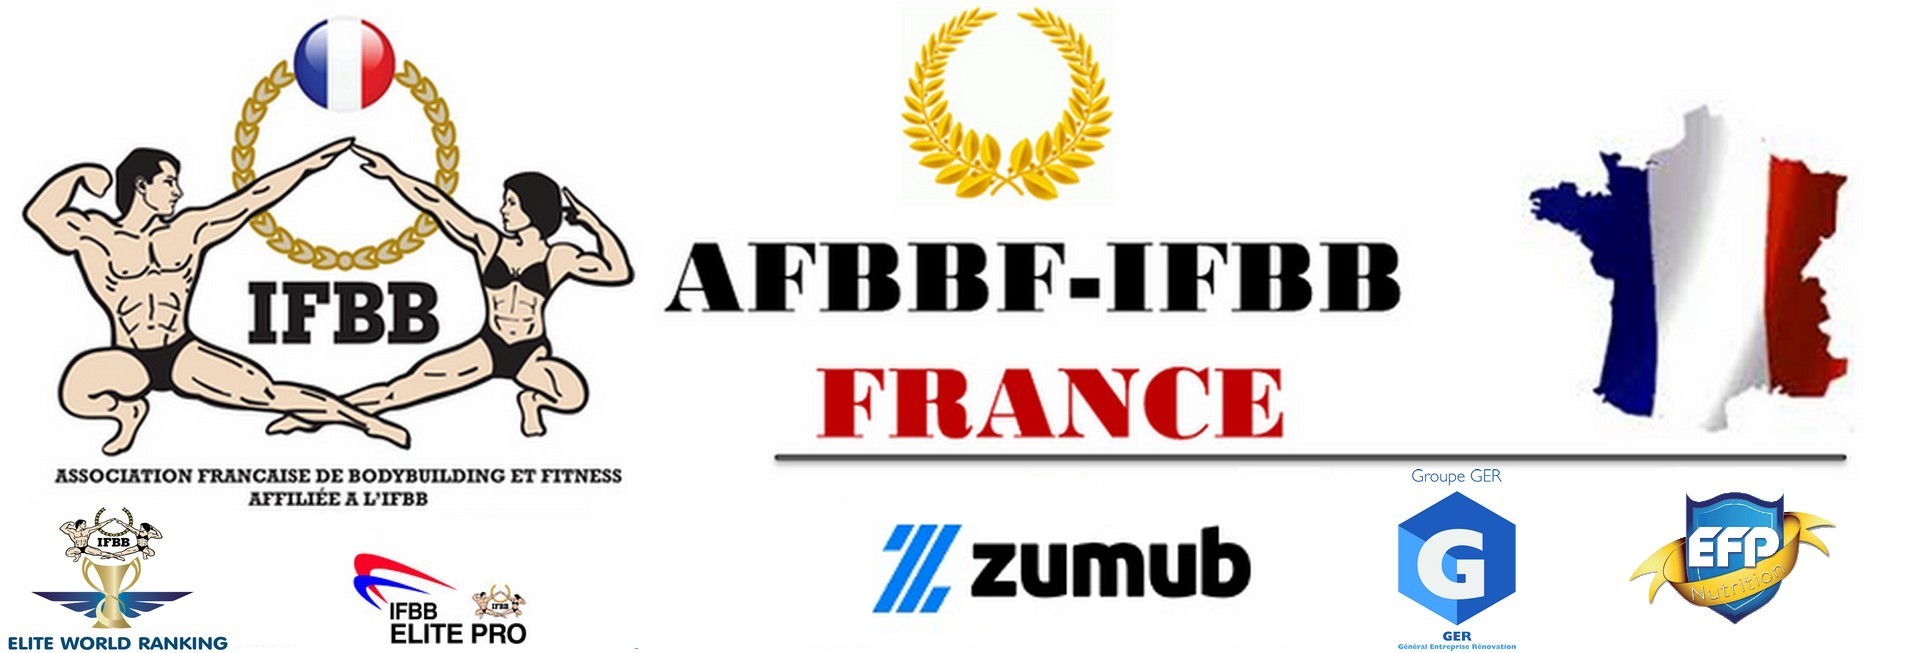 IFBB FRANCE OFFICIEL